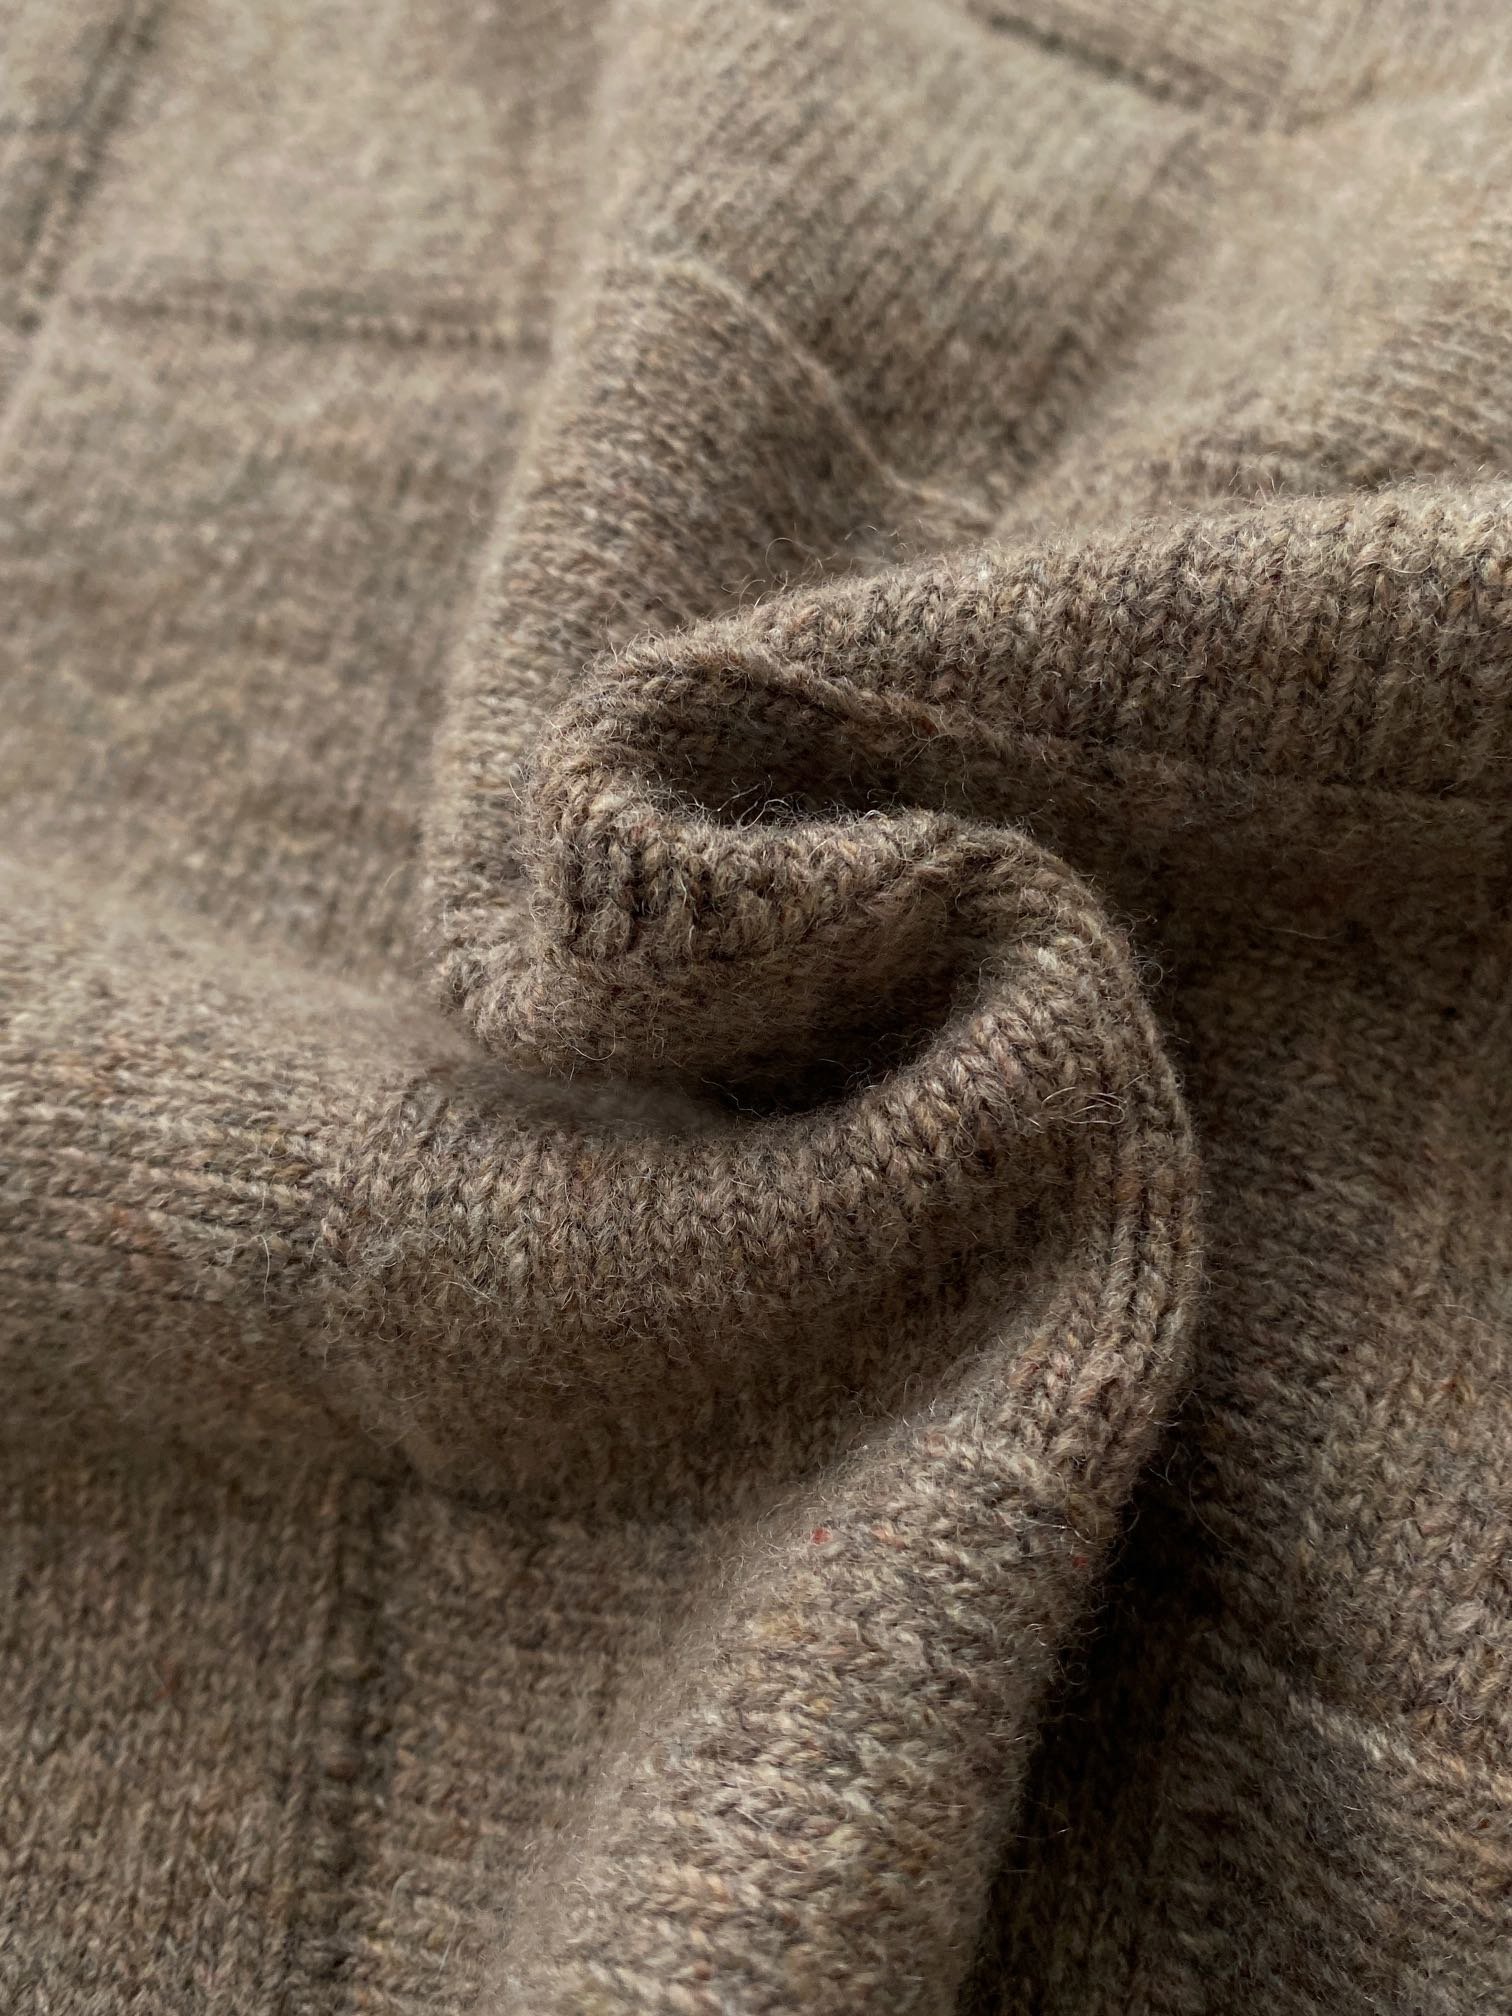 菱格暗纹圆领短款毛衫选用羊毛混纺纱线